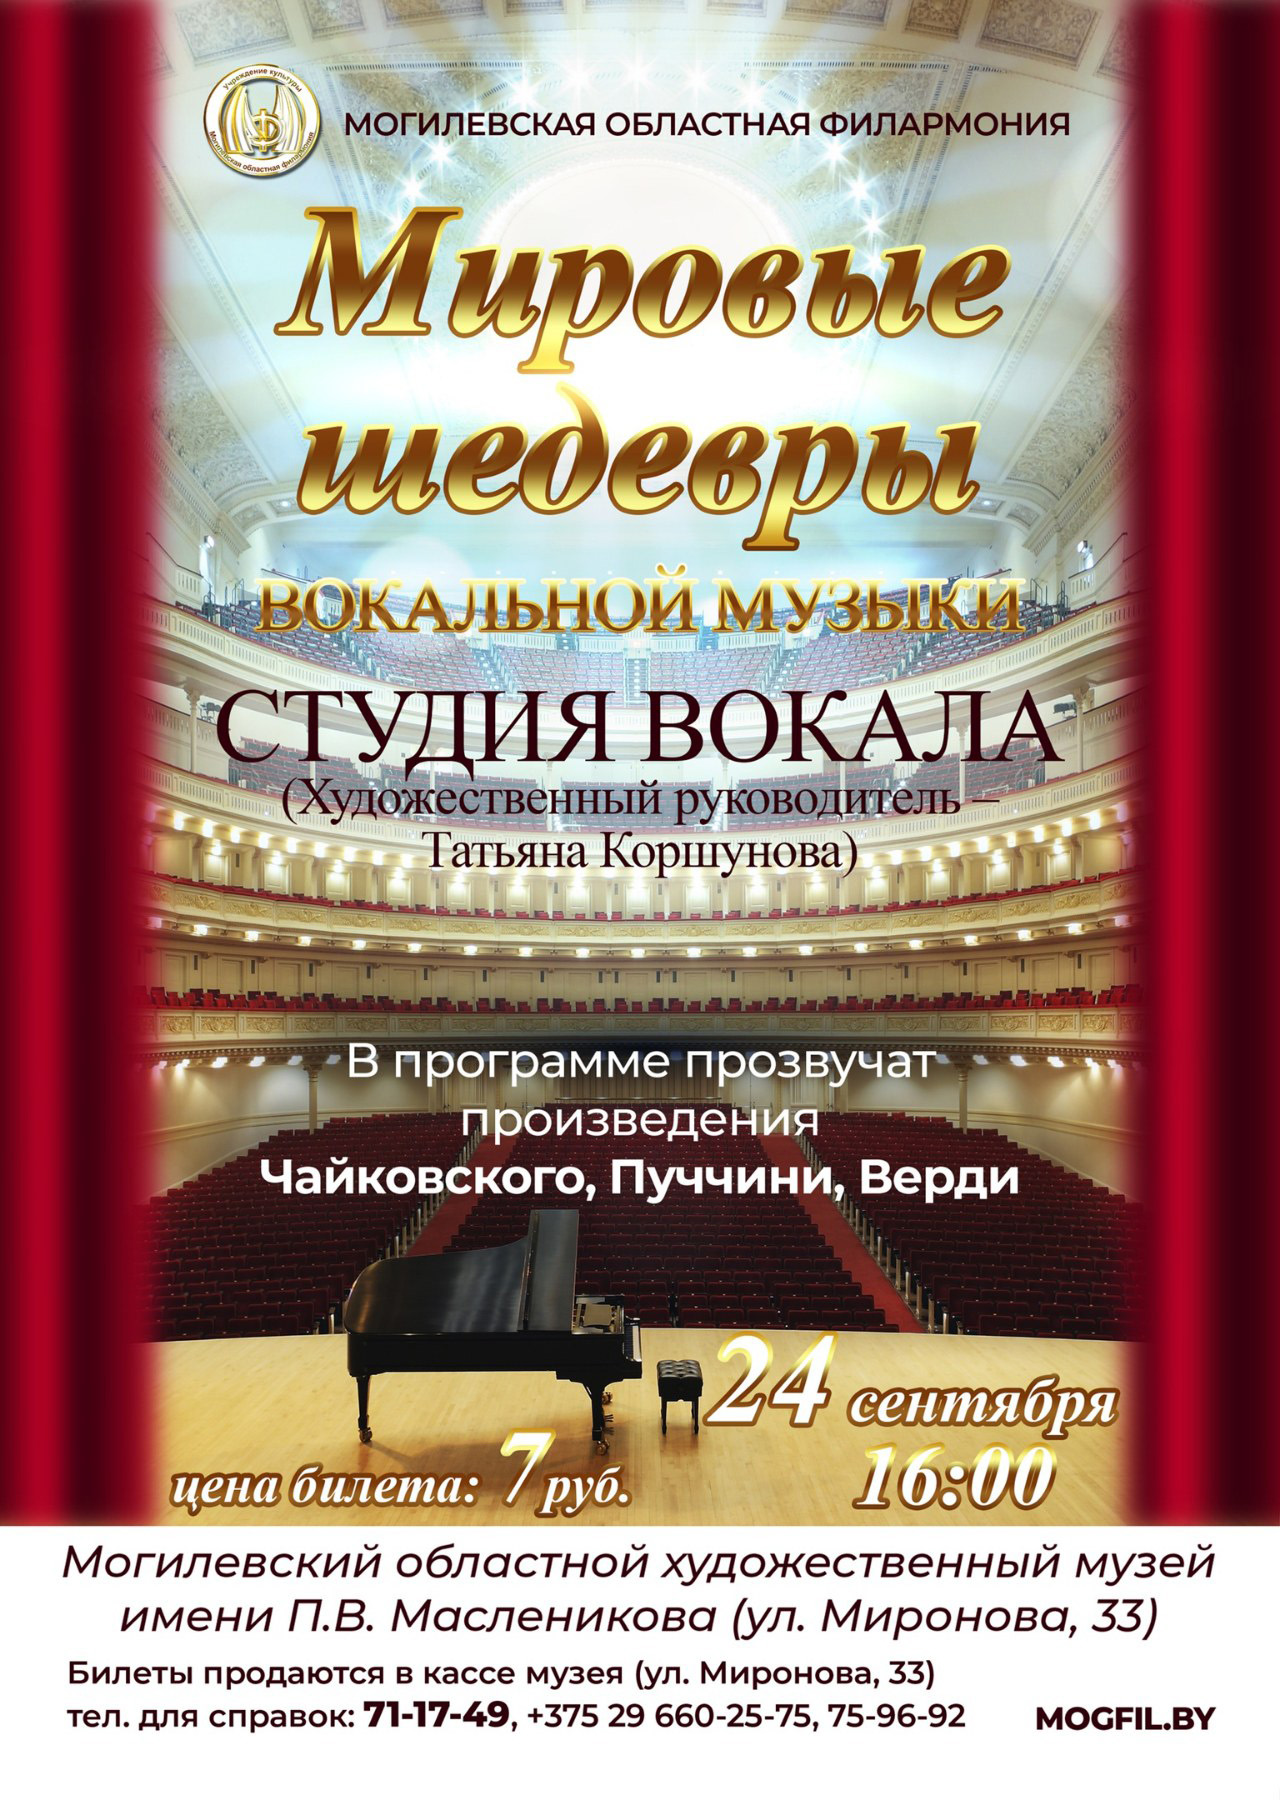 Могилевчан приглашают послушать «Мировые шедевры вокальной музыки»